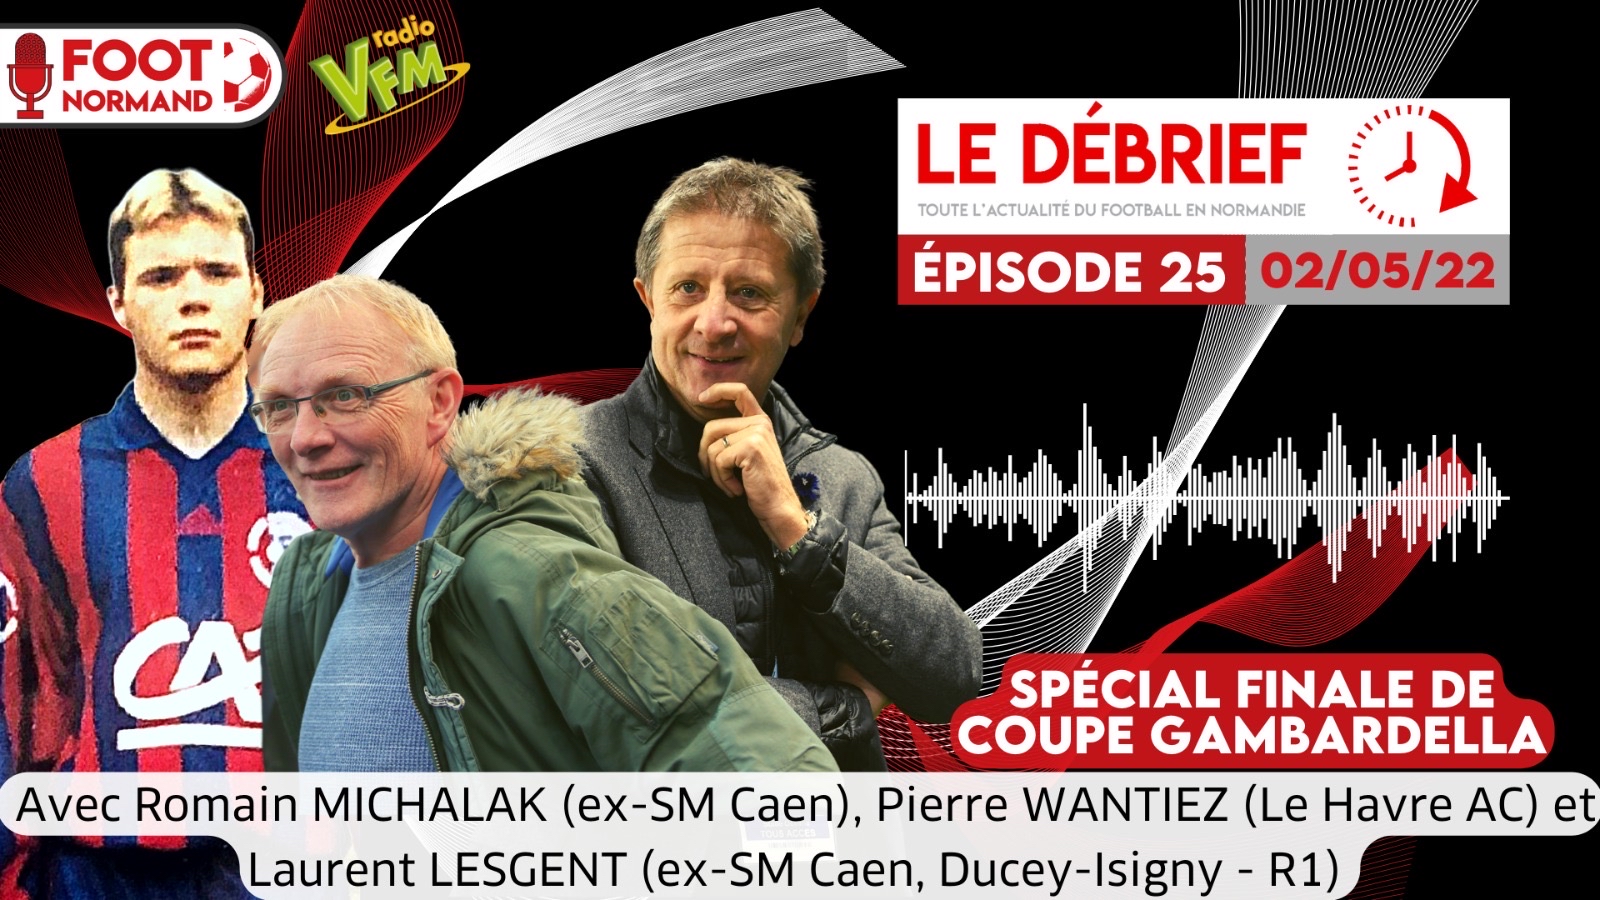 Co-entraîneur de l'US Ducey-Isigny (R1), Laurent Lesgent est l'invité de la troisième partie du 25e épisode du Débrief.